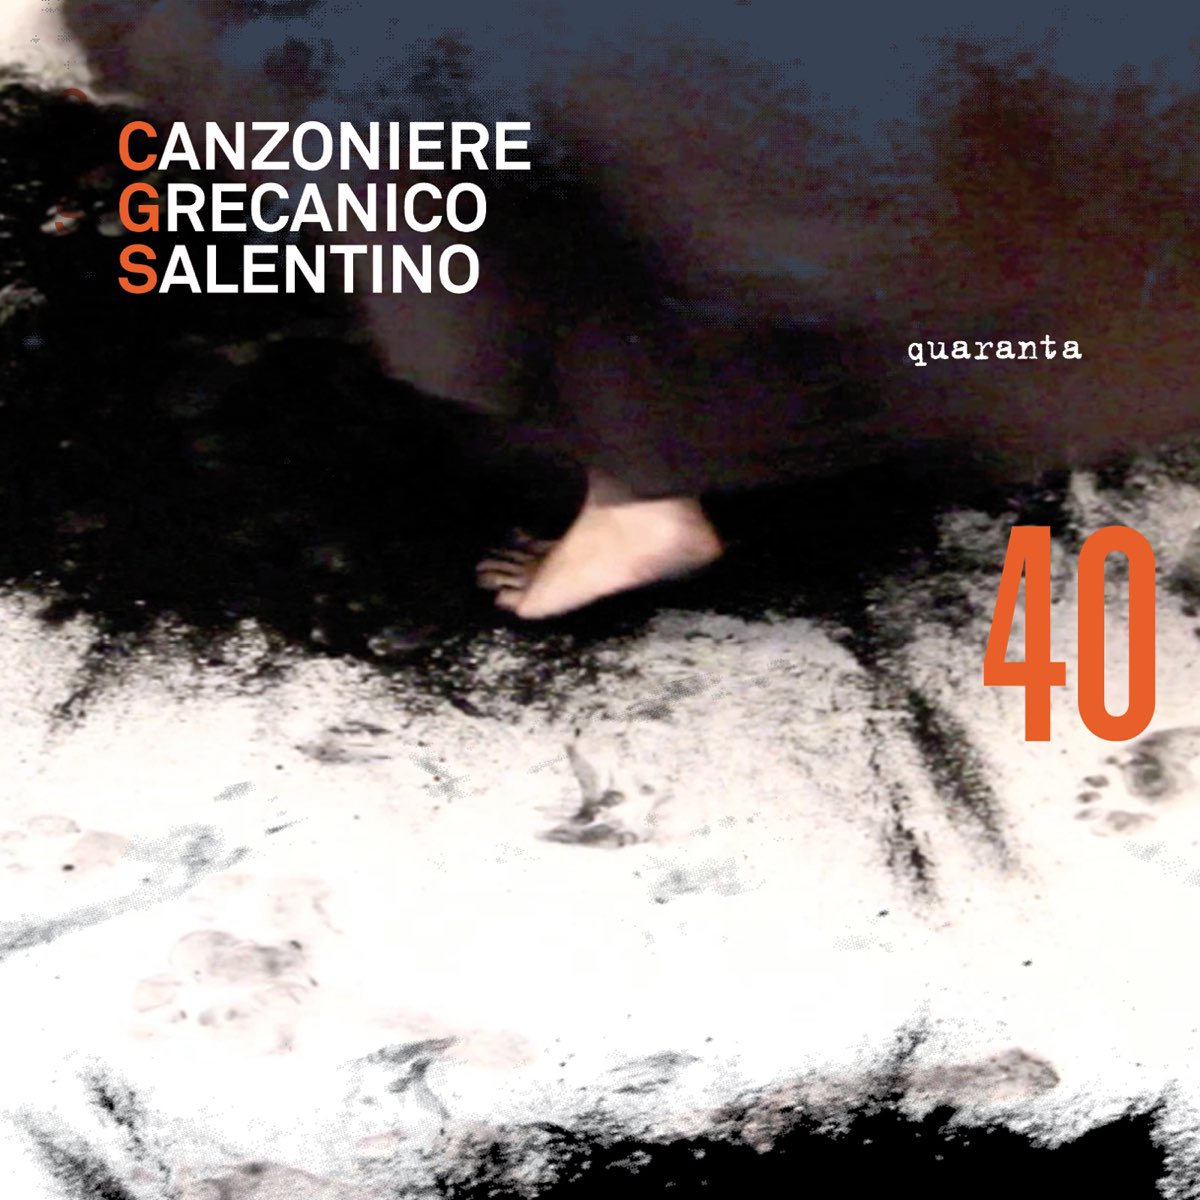 Quaranta by Canzoniere Grecanico Salentino on Apple Music